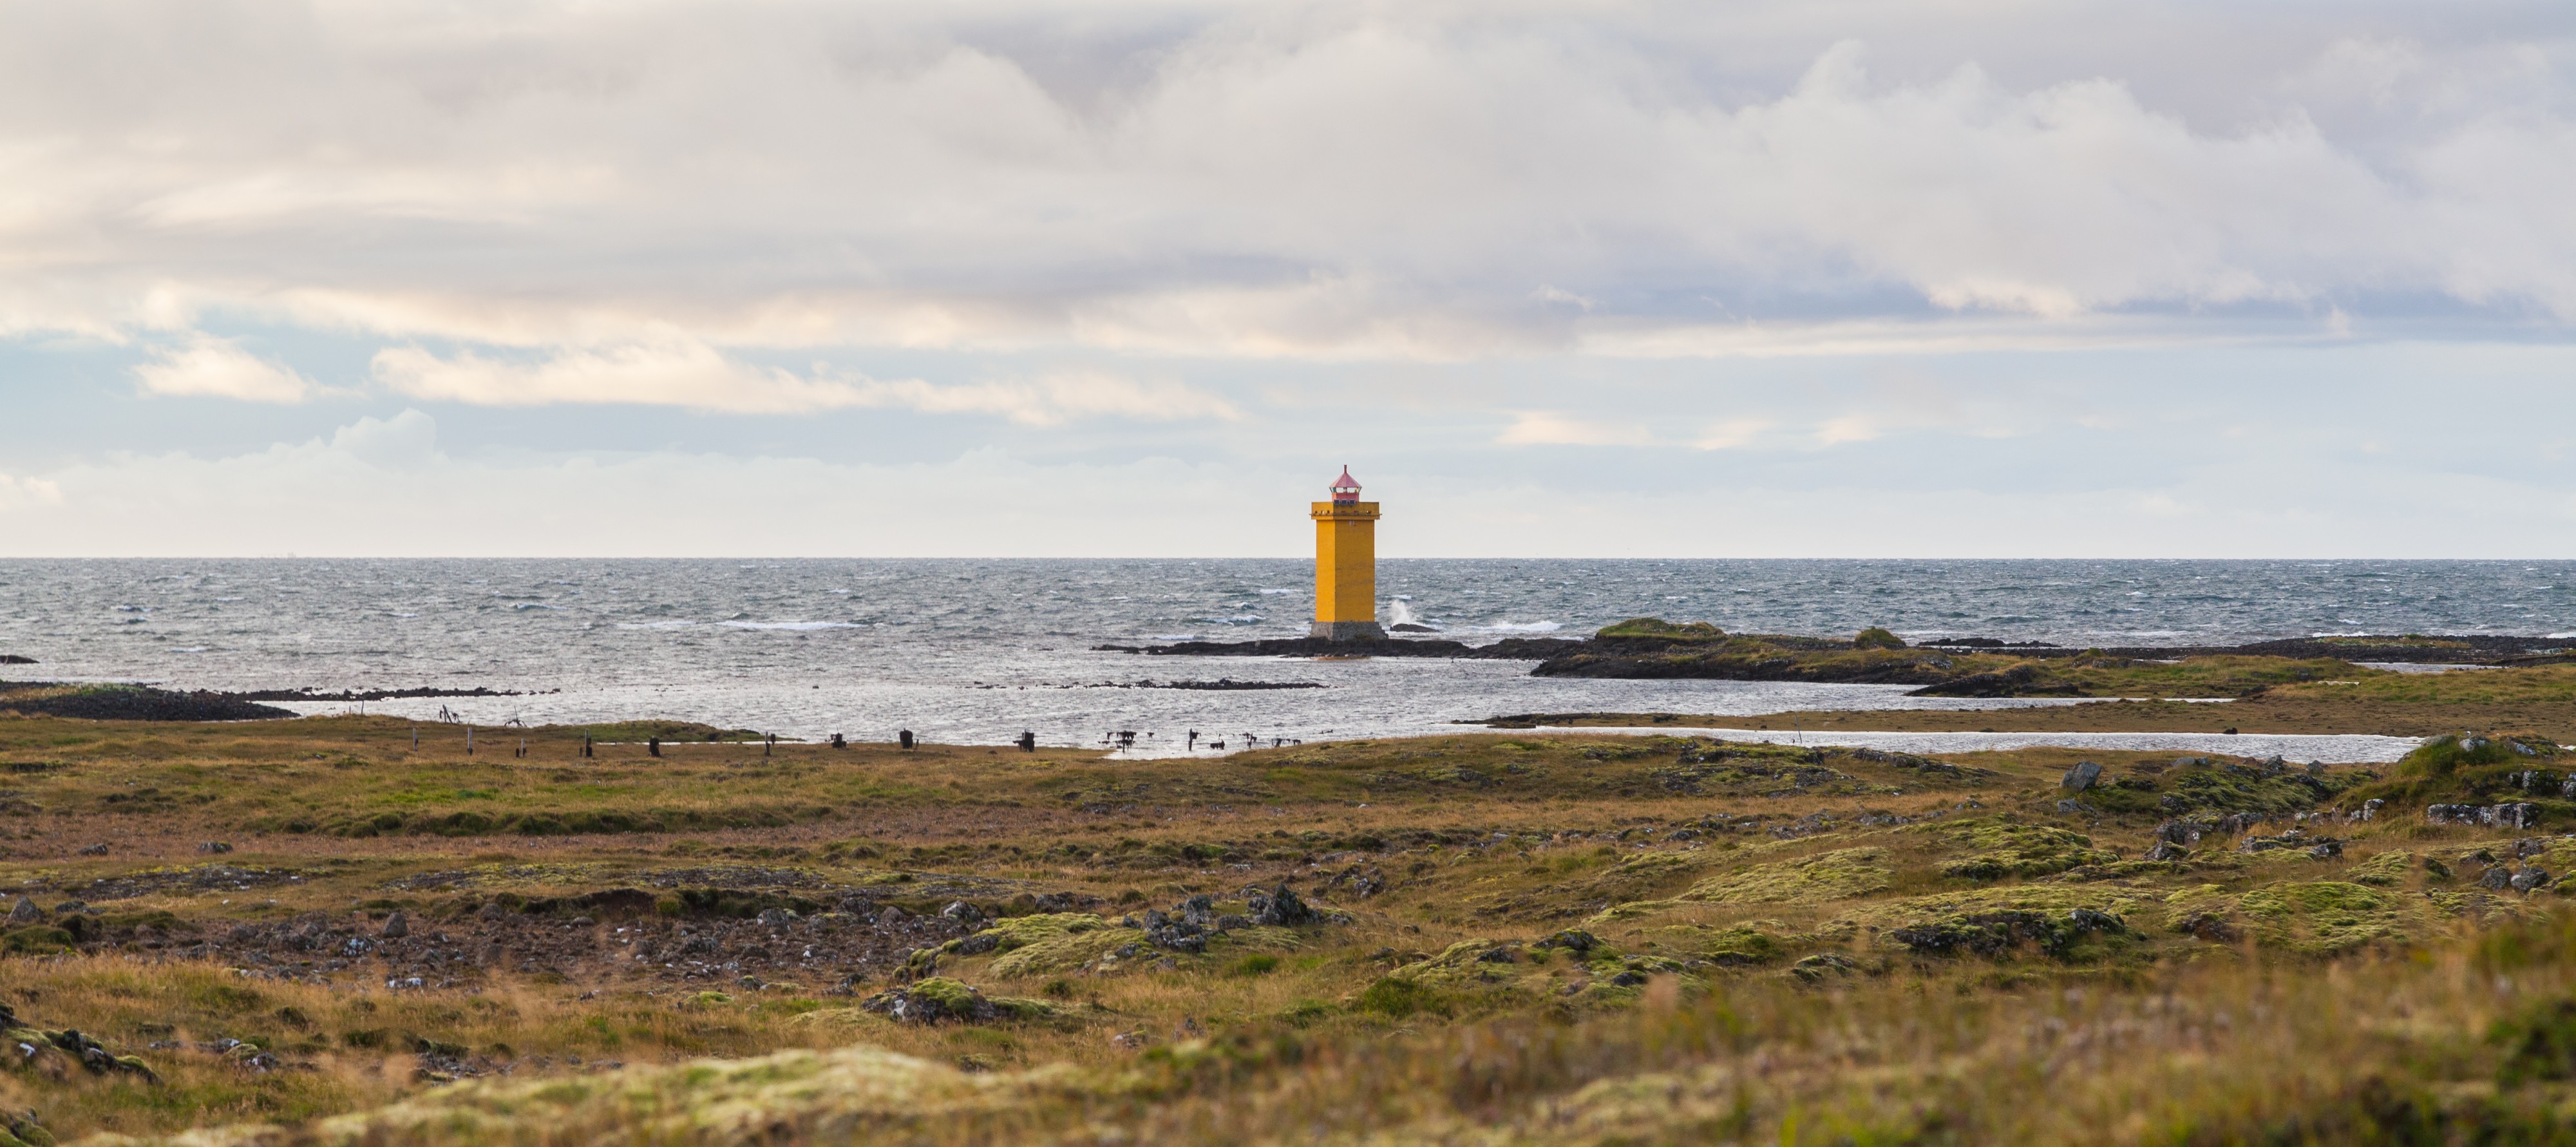 Faro de Gerhistangi, Vogar, Suðurnes, Islandia, 2014-08-15, DD 112